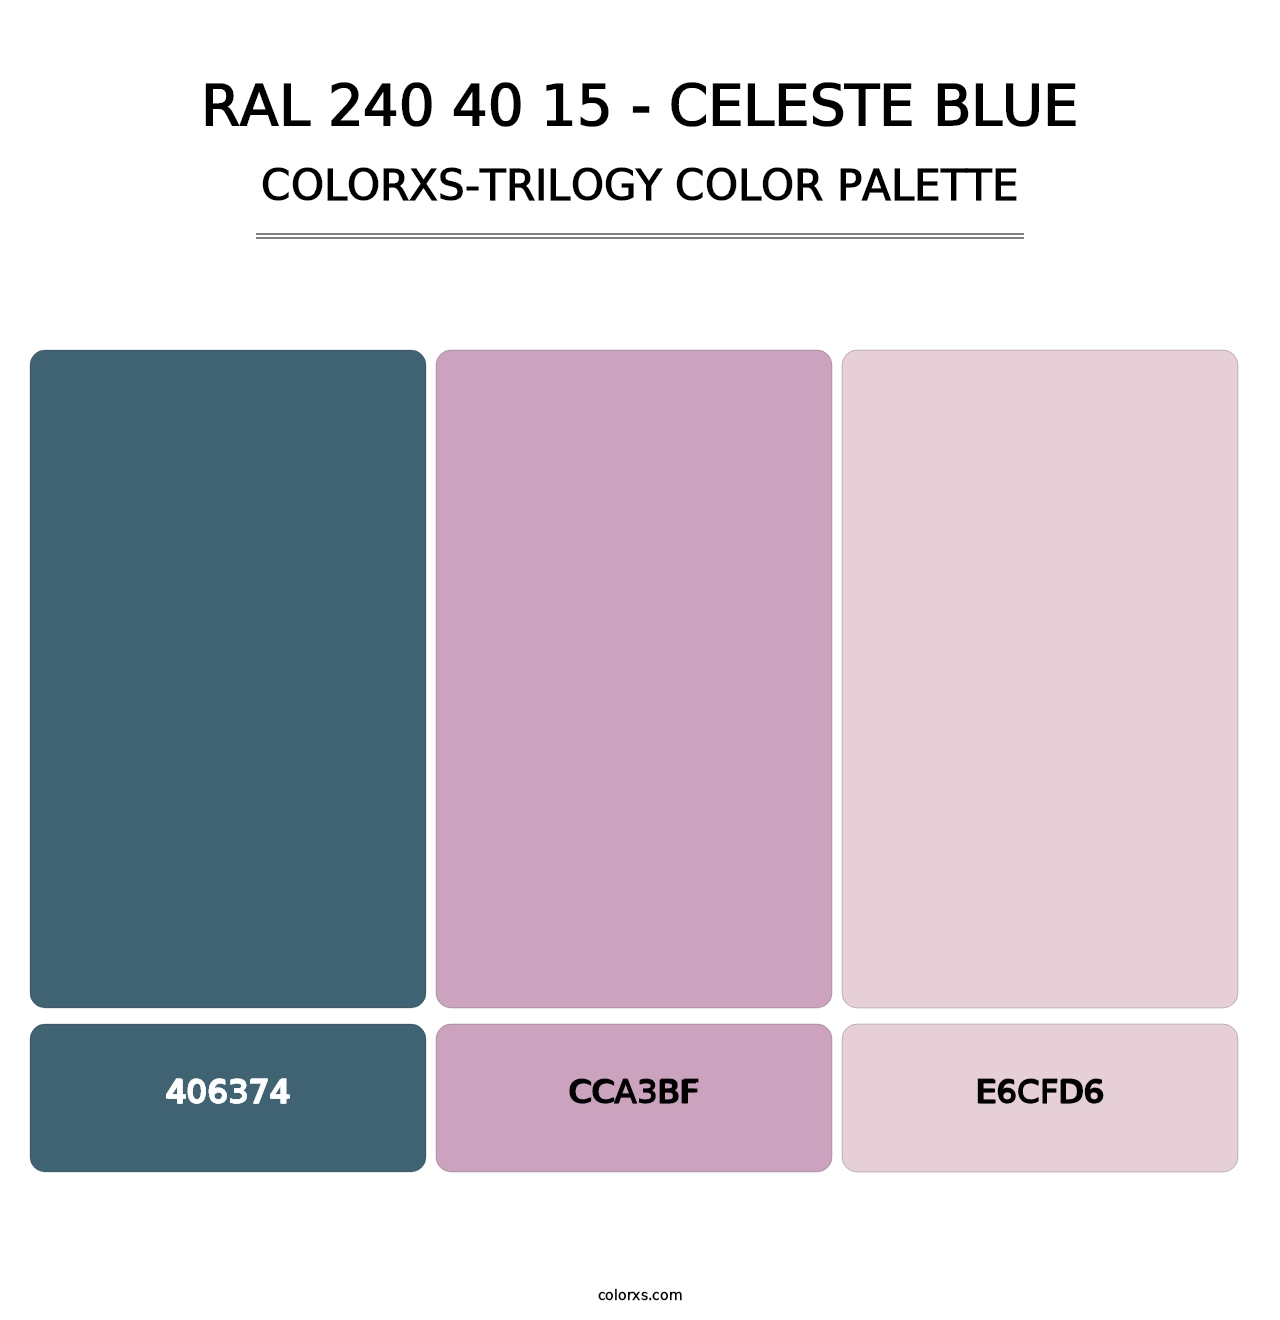 RAL 240 40 15 - Celeste Blue - Colorxs Trilogy Palette